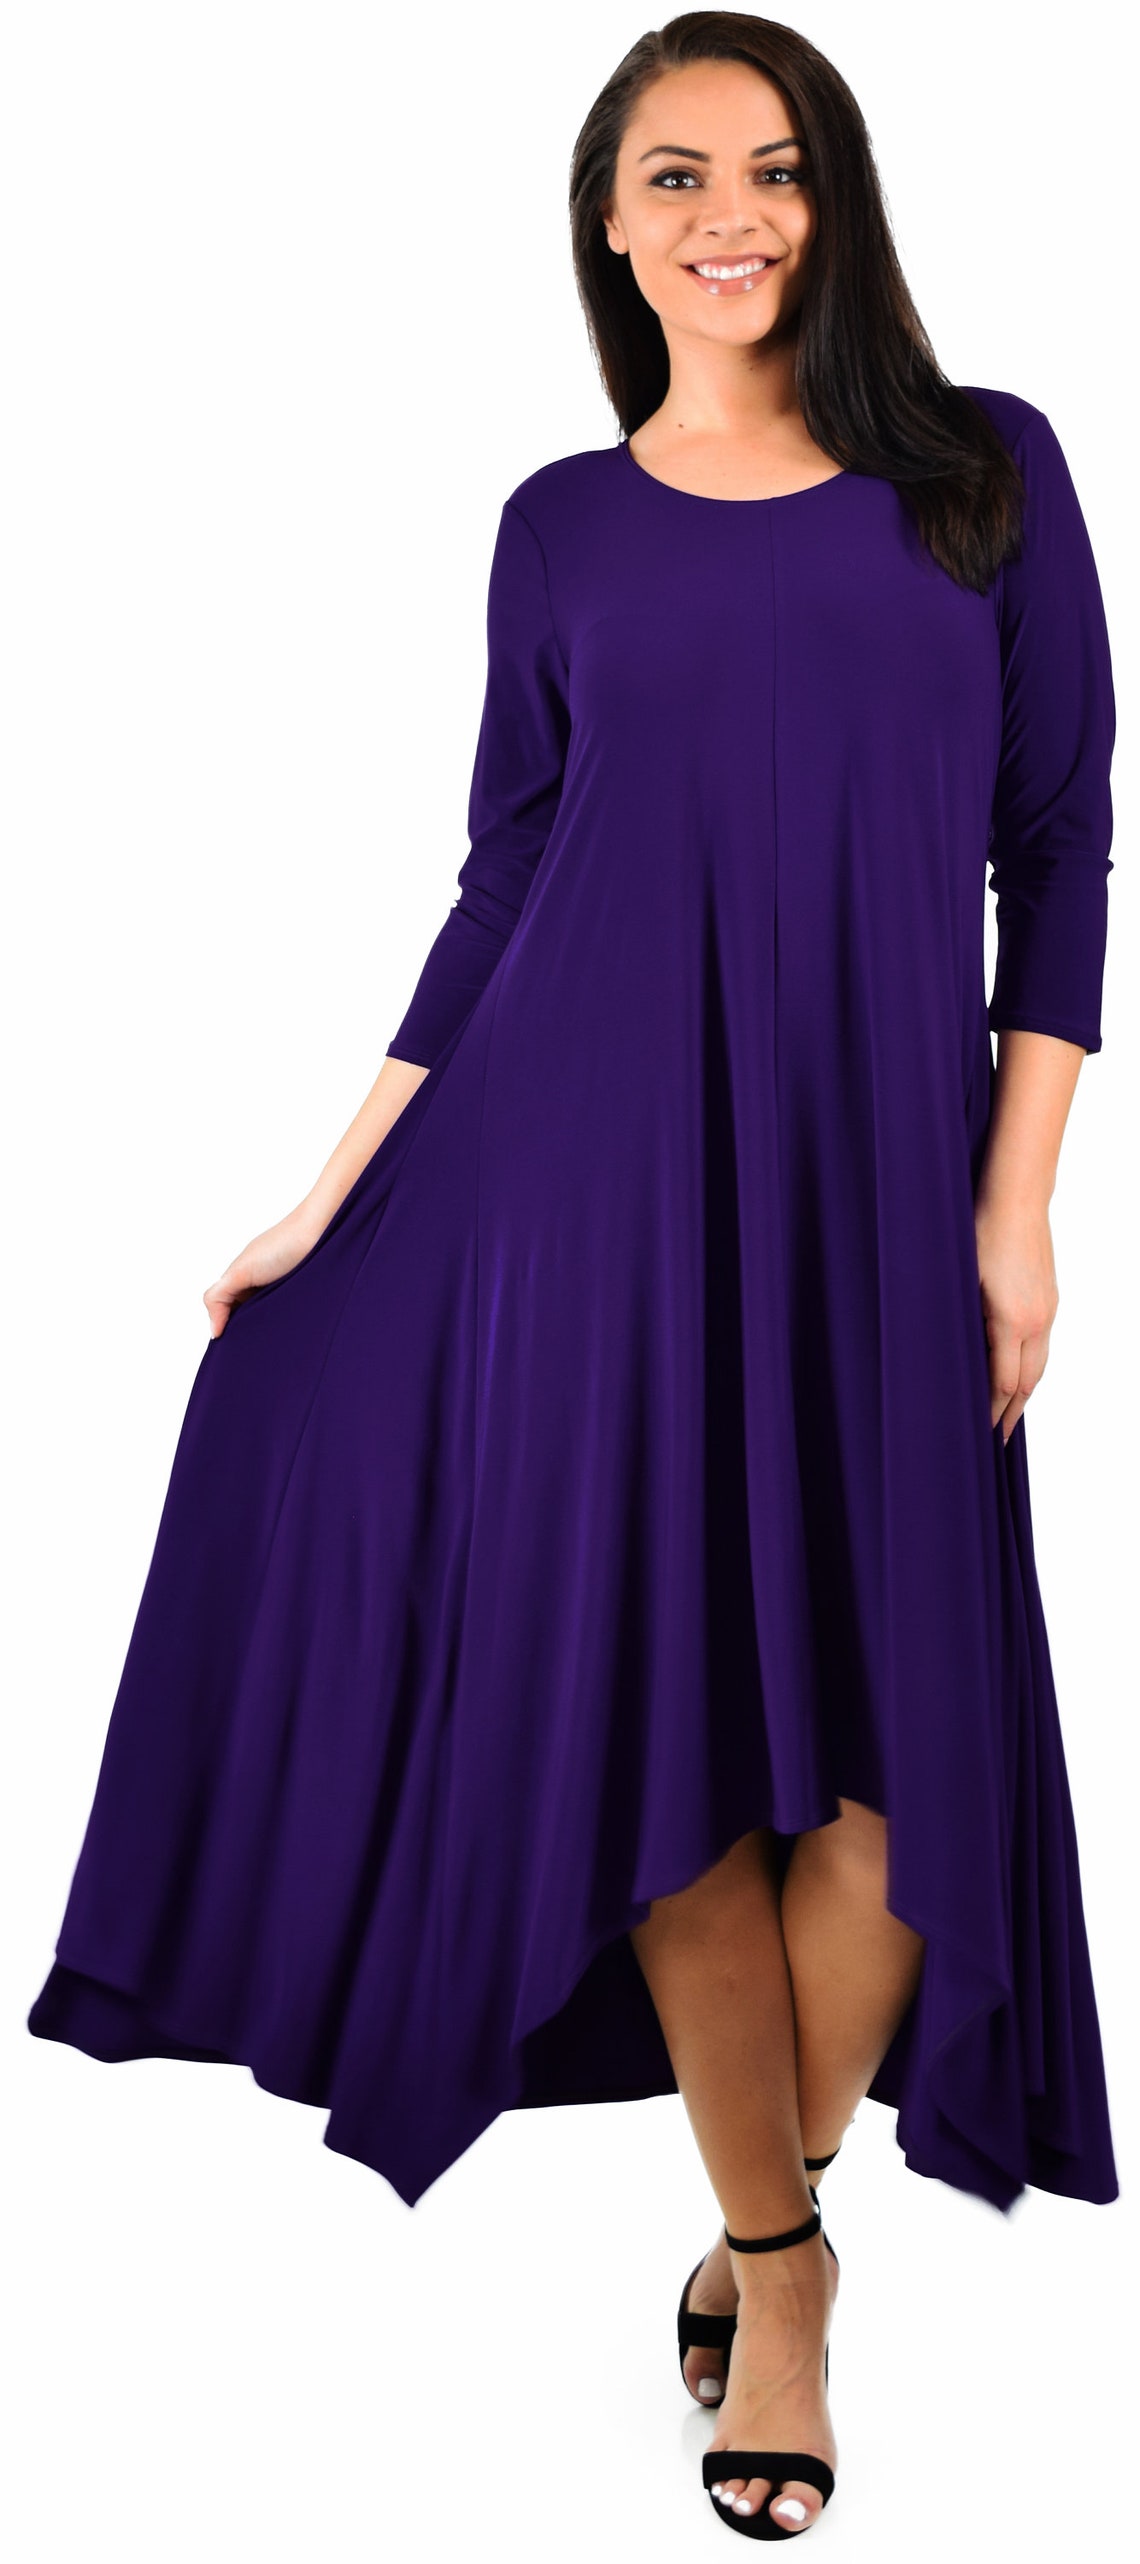 Elegant Designer Dress Lagenlook Dress Swing Dress | Etsy